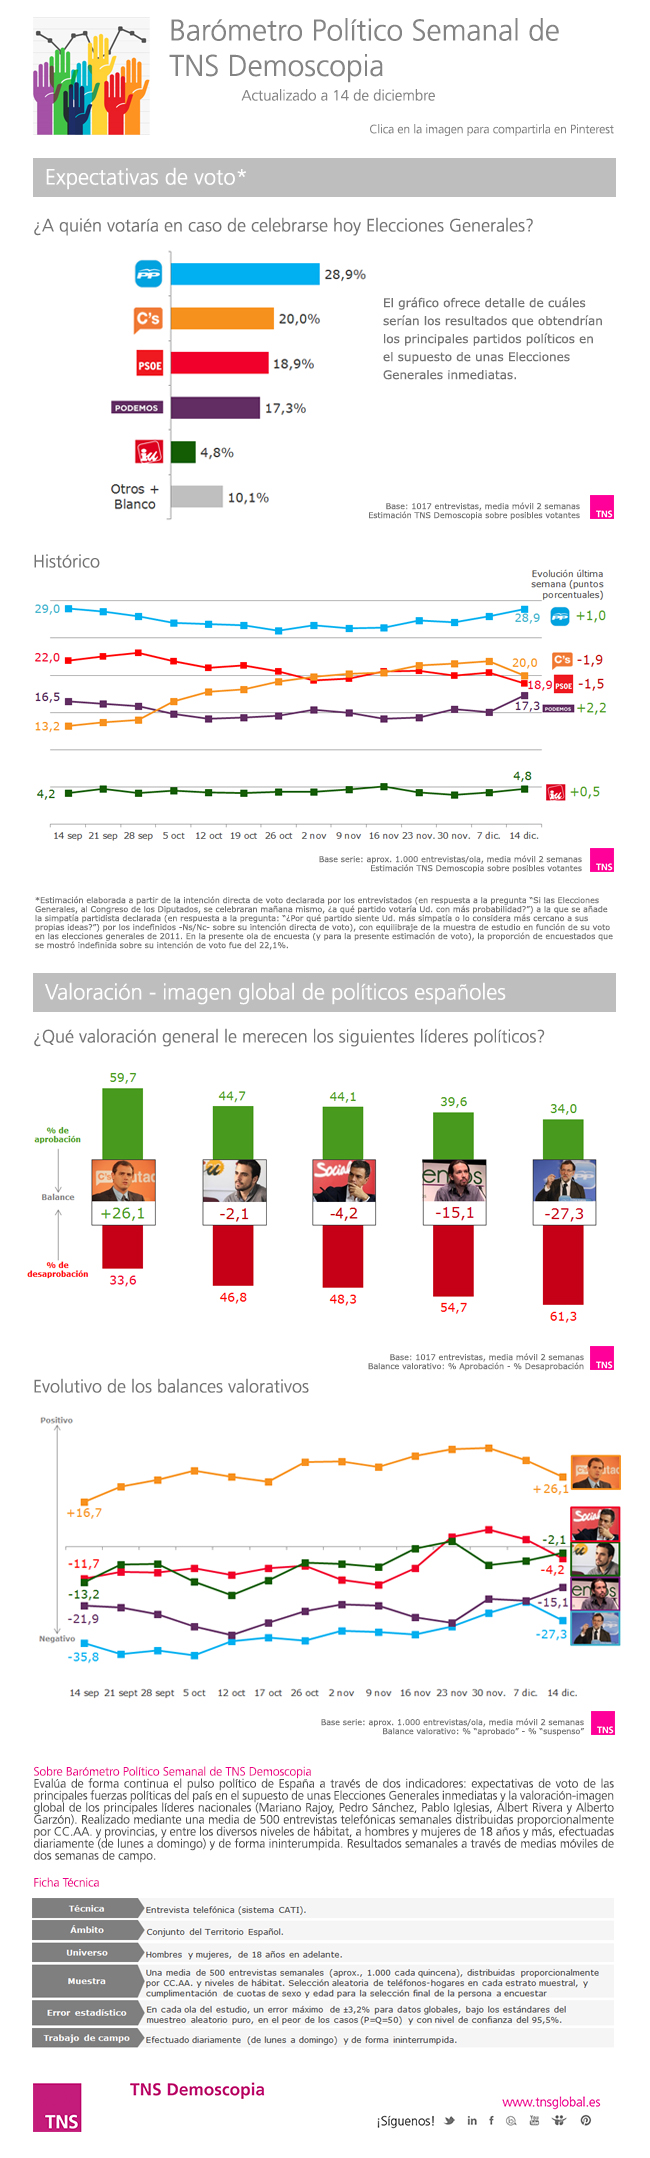 elezioni Spagna, infografiche sulle elezioni del 20 dicembre